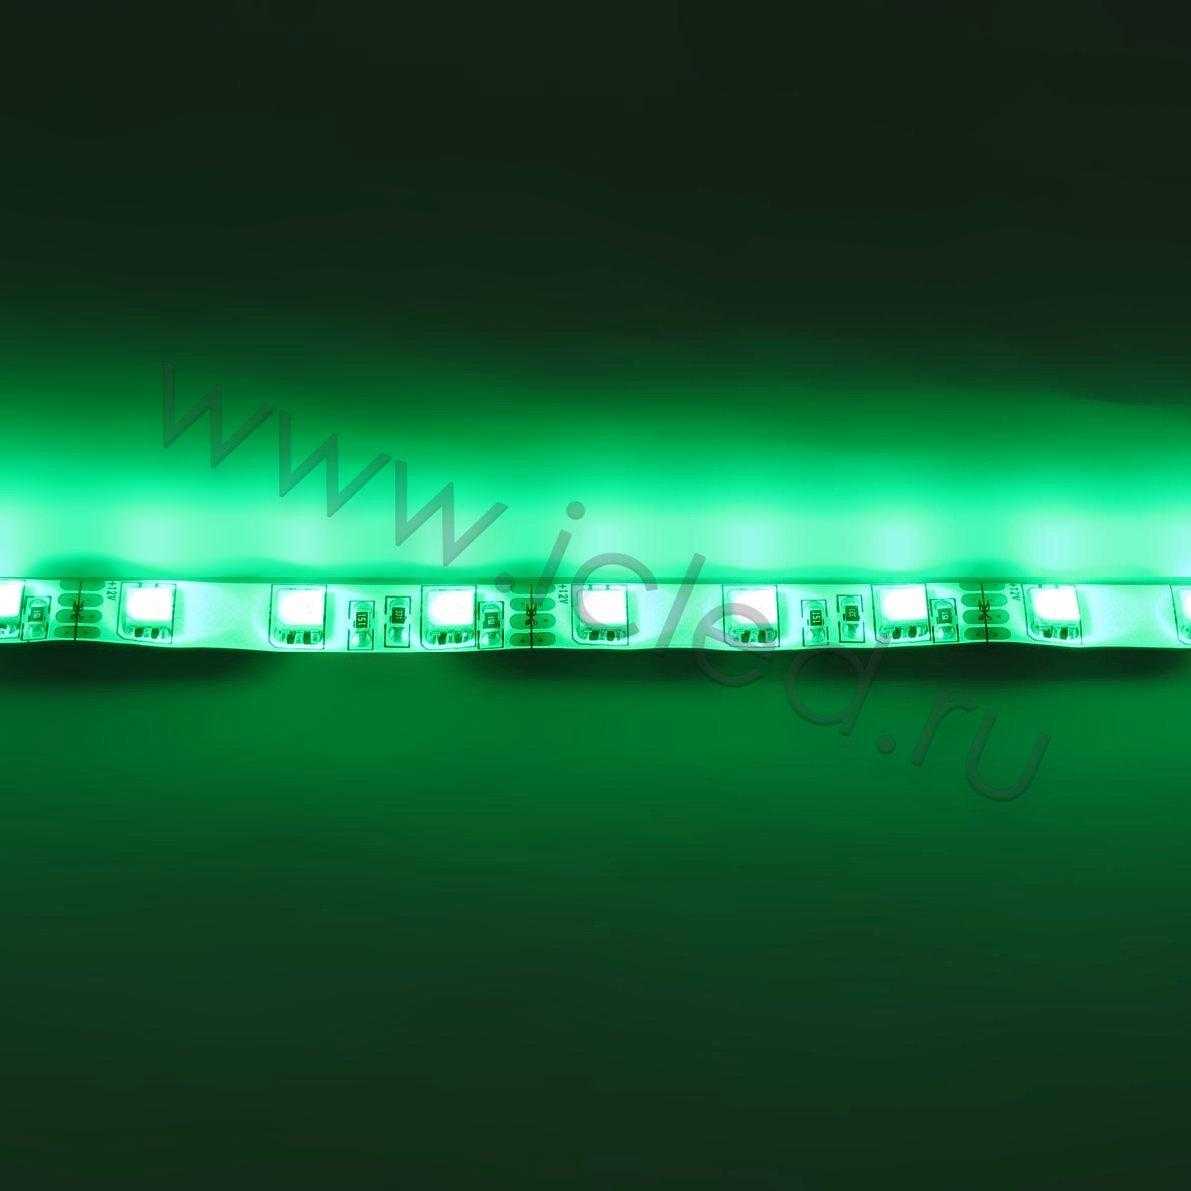 Влагозащищенные светодиодные ленты Светодиодная лента LUX class, 5050, 60 led/m, RGB, 12V, IP65 Icled